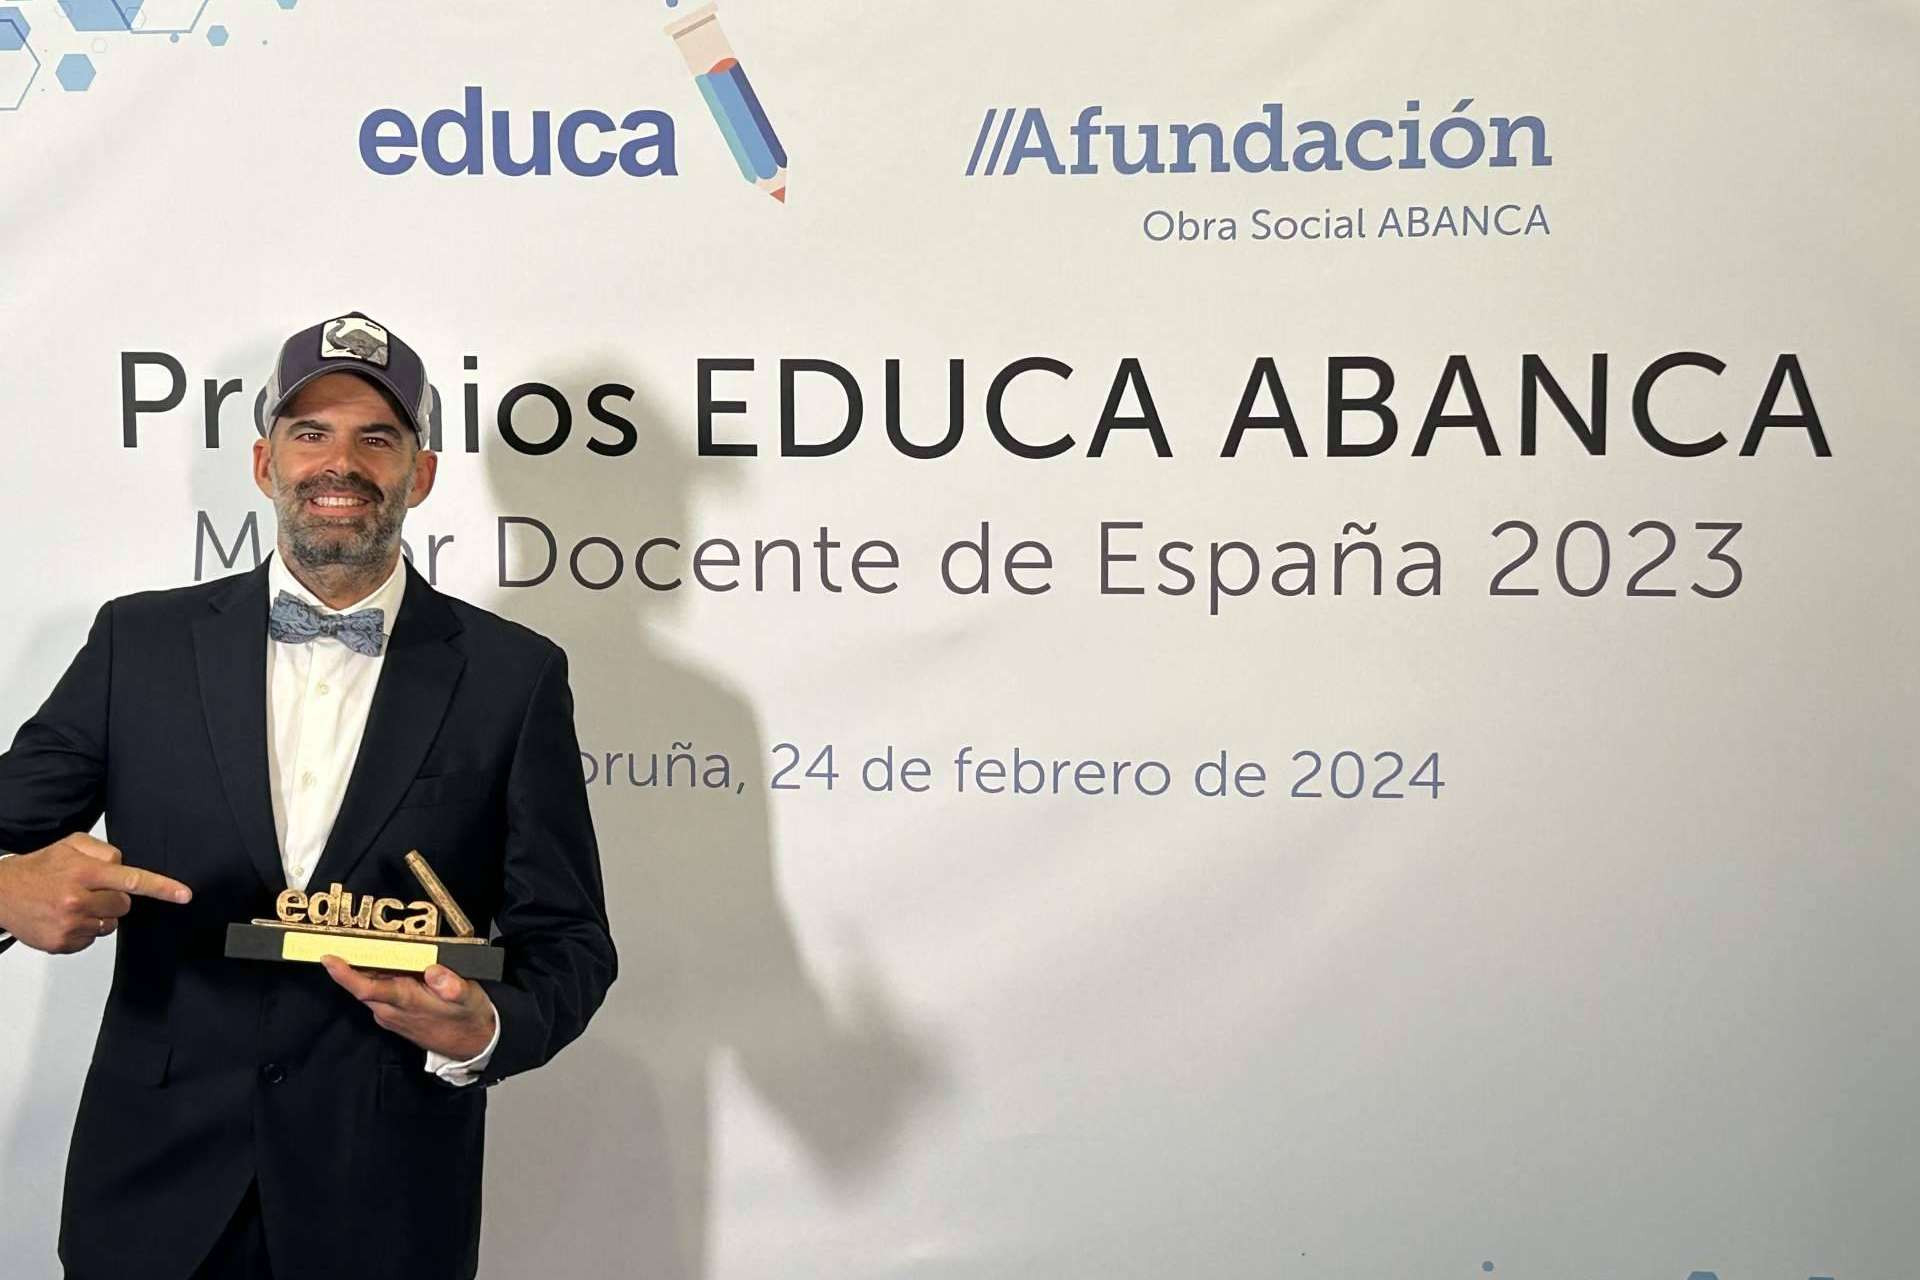  Daniel Navarro Ardoy, CEO y Director Pedagógico de la academia Opospills, es galardonado 